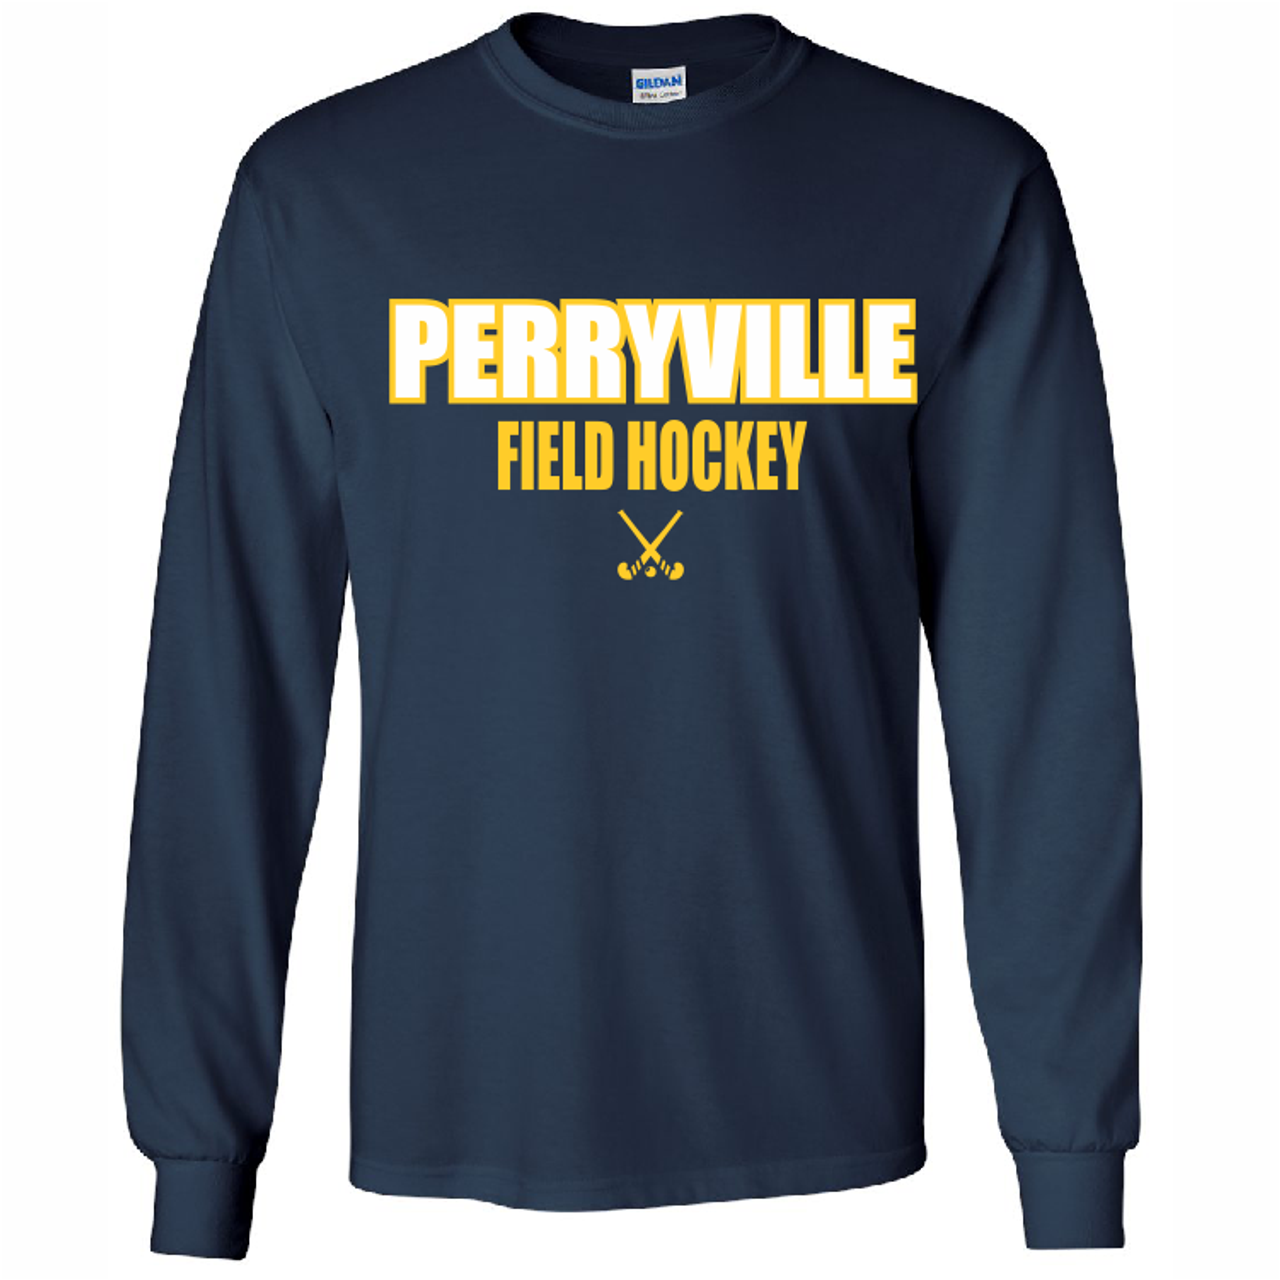 Perryville Field Hockey Cotton Tee, Navy